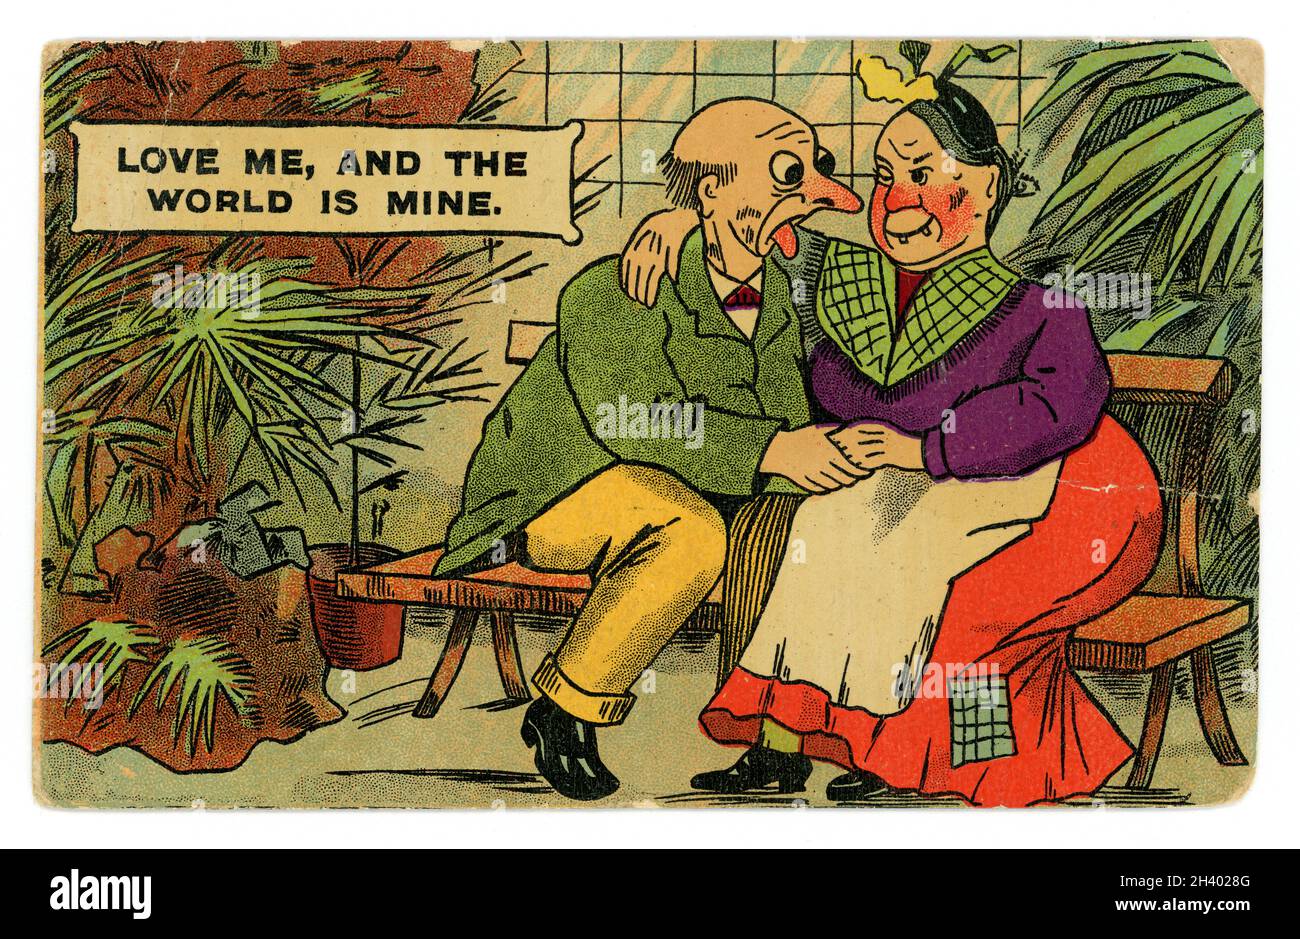 Carte postale originale de la bande dessinée Edwardienne, d'actualité pour l'époque. L'illustration présente un ancien couple mûr peu attrayant courting. L'inscription 'Love Me and the World is mion', est le titre d'une chanson d'amour populaire de 1906 par Ernest R. ball et Dave Reed, Jr. Publié en avril 1909 Banque D'Images